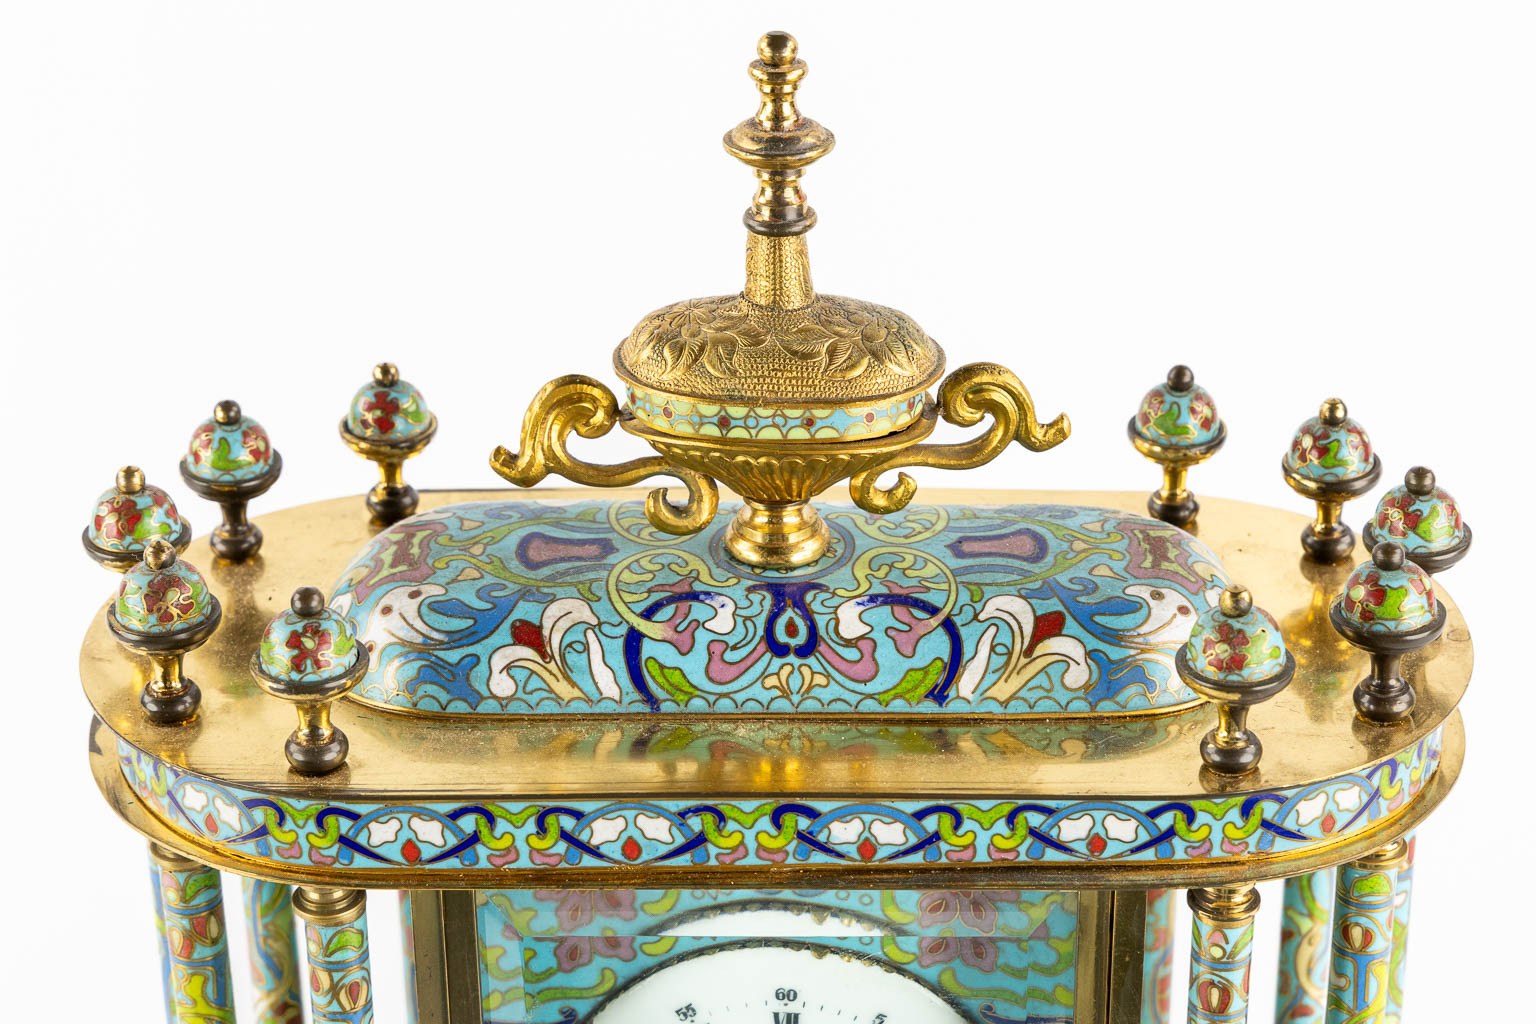 A decorative table clock, finished with cloisonné enamel. (L:15 x W:32 x H:46 cm)